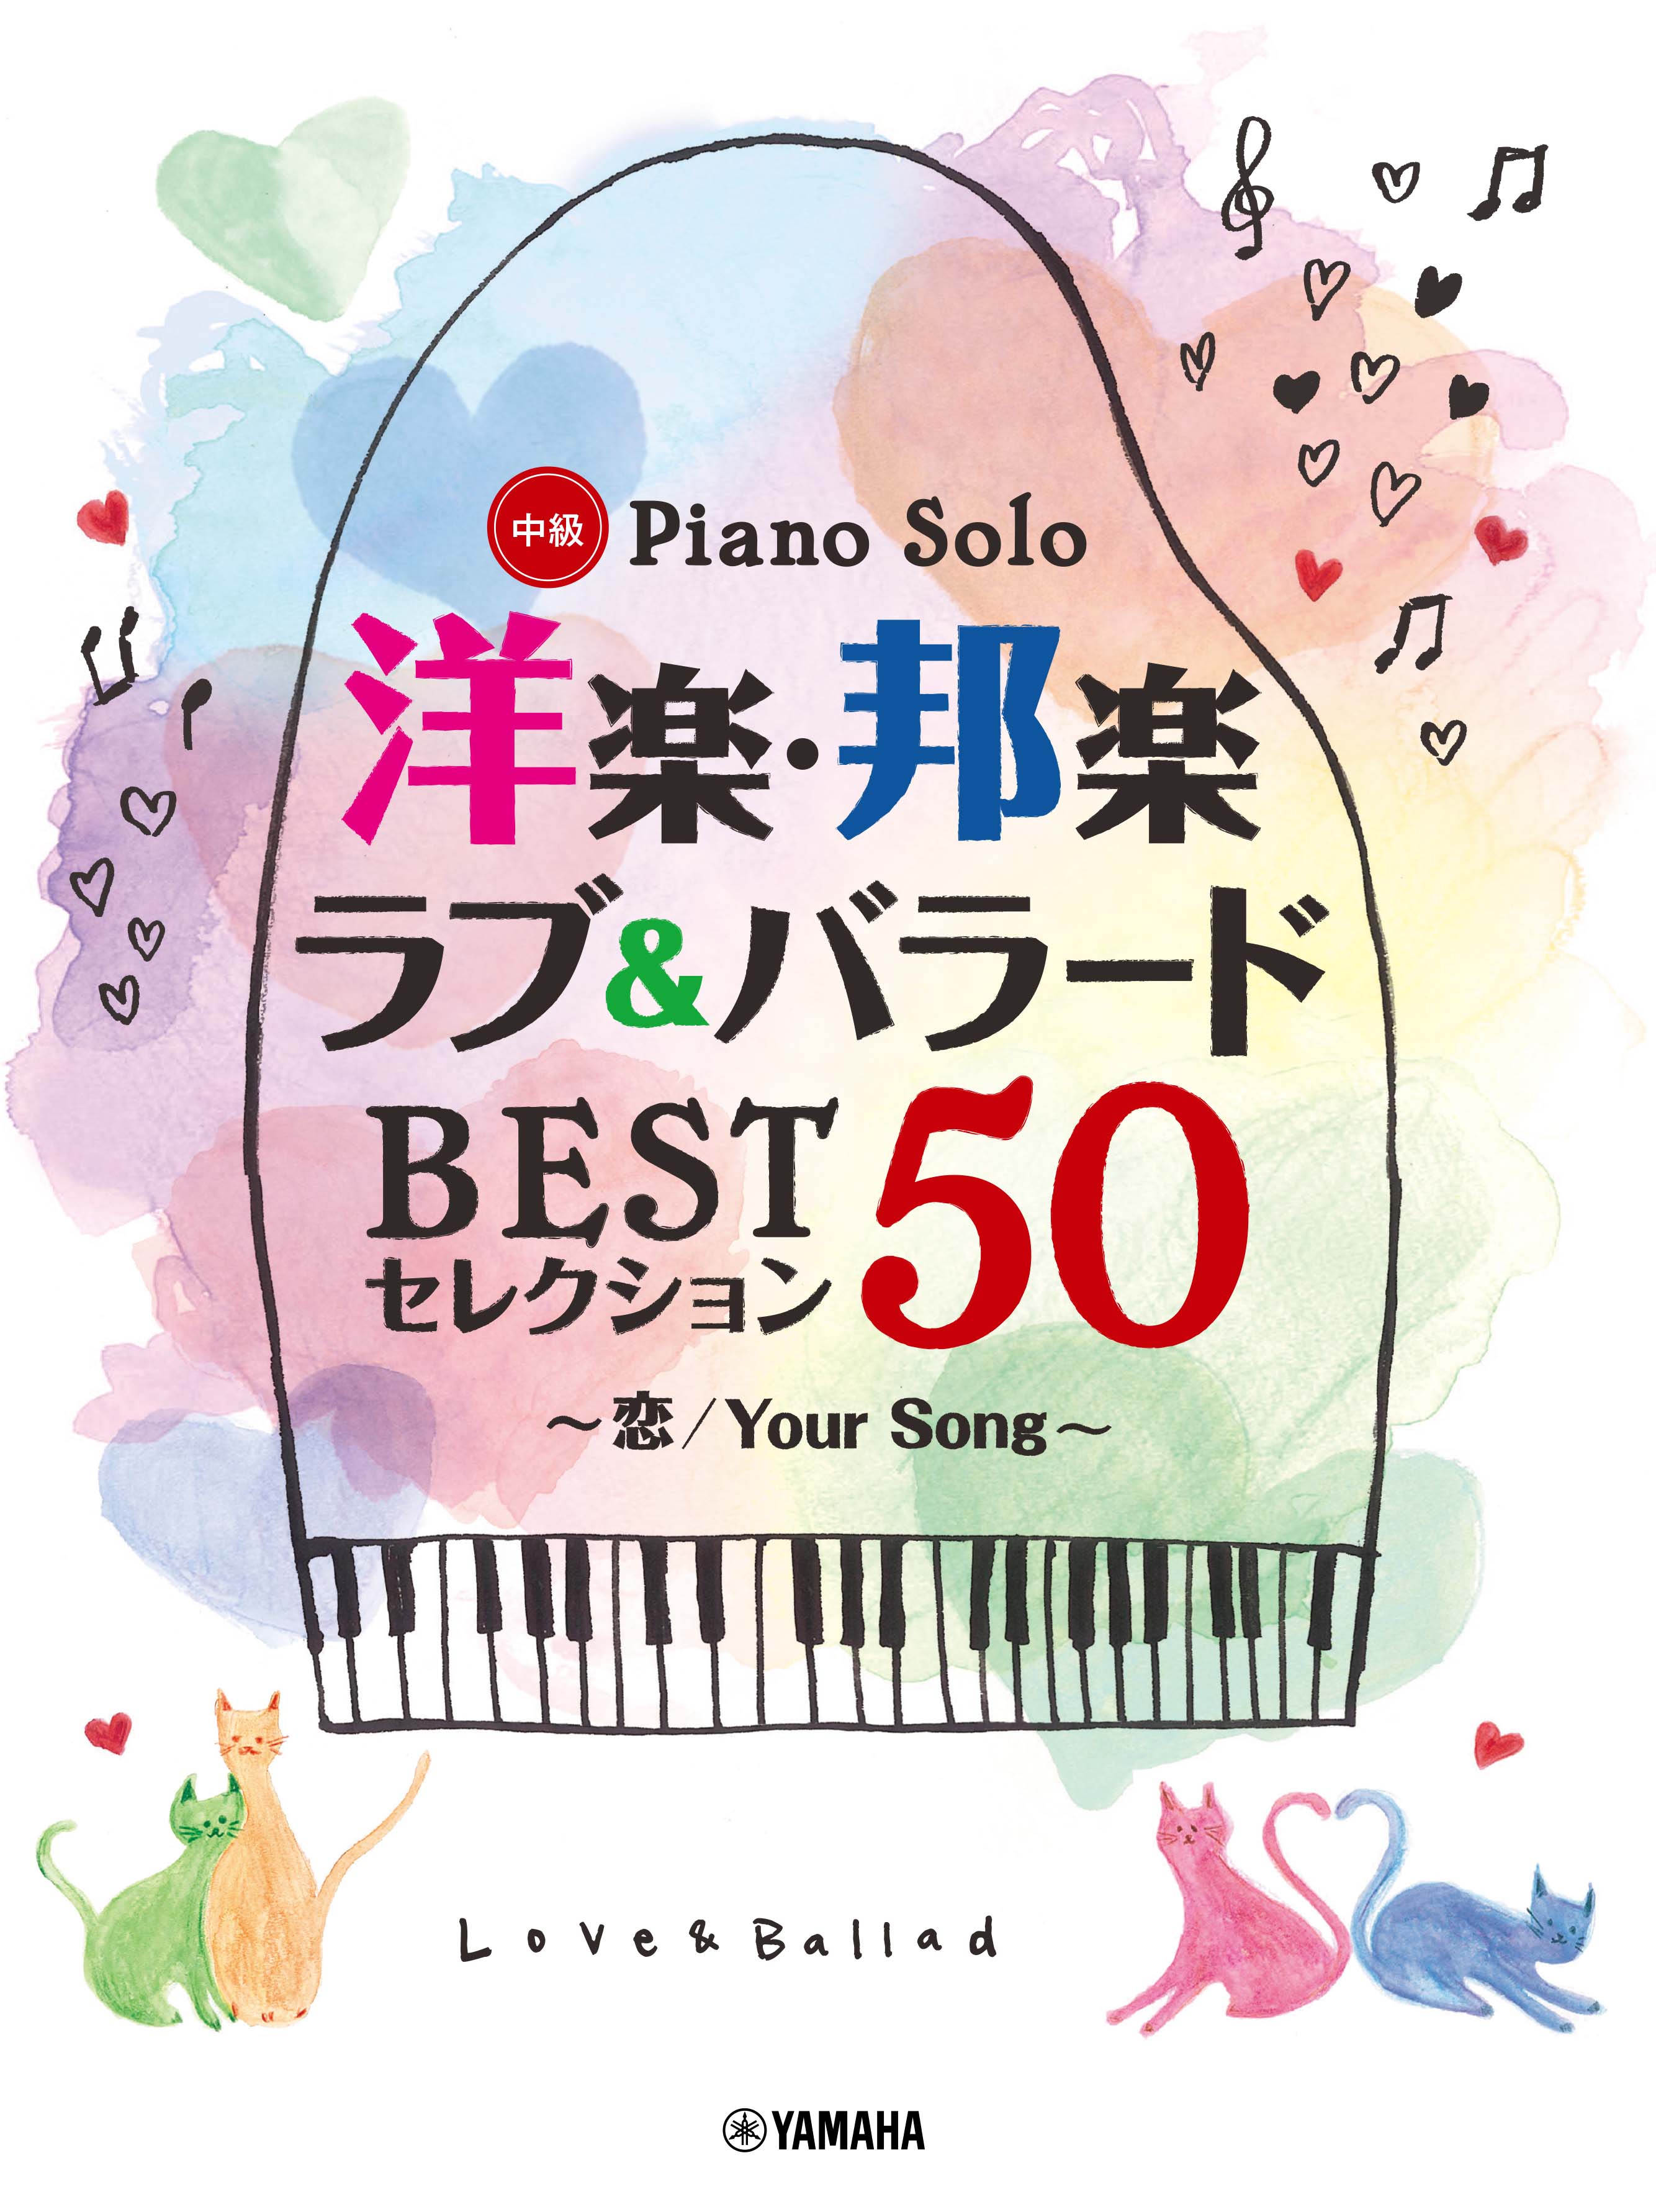 ピアノソロ 洋楽・邦楽 ラブu0026バラード BESTセレクション50 ～恋/Your Song～ | ヤマハの楽譜通販サイト Sheet Music  Store